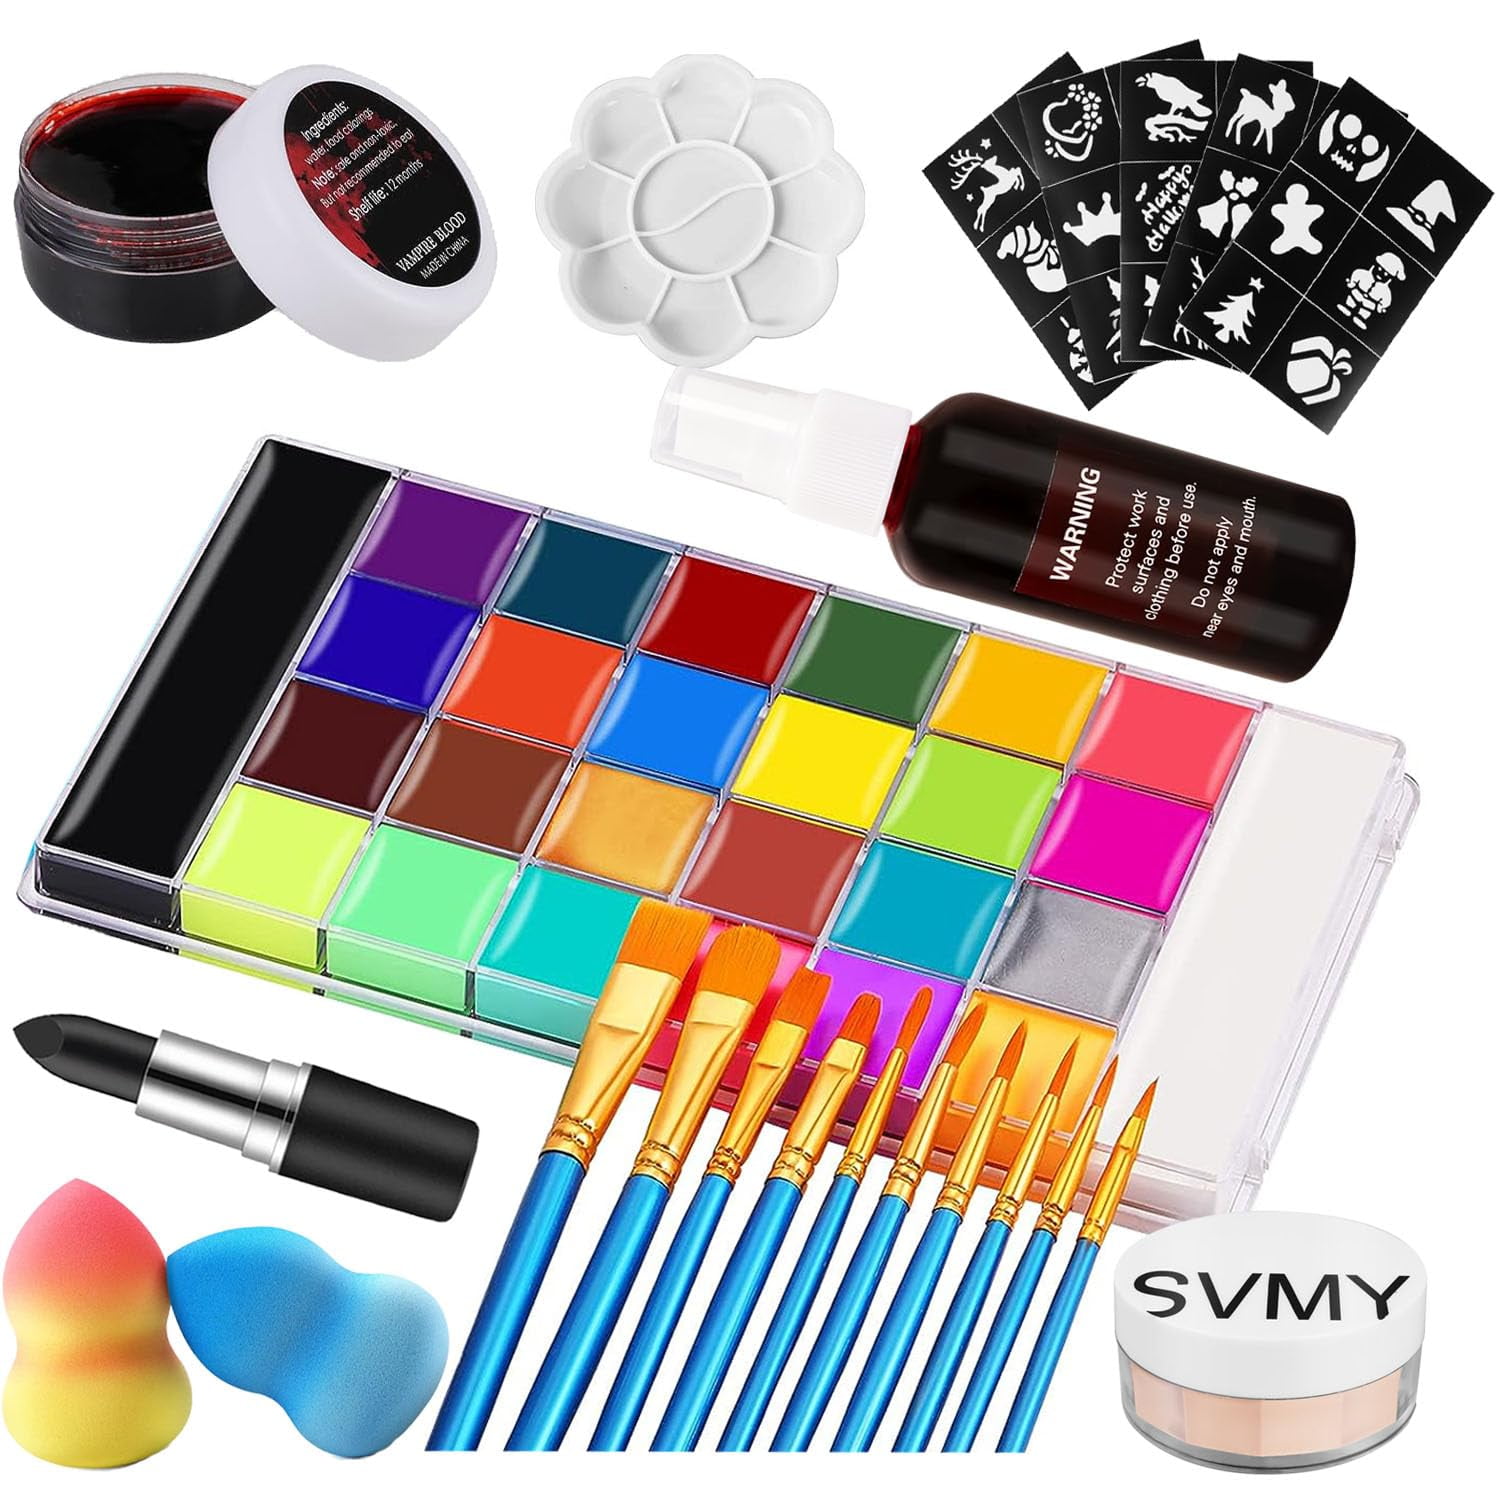 Facepaint Makeup Kit Safe 26 Color Face Painting Oil Palette Set  Multipurpose Makeup Palette For Art Theater Halloween Parties